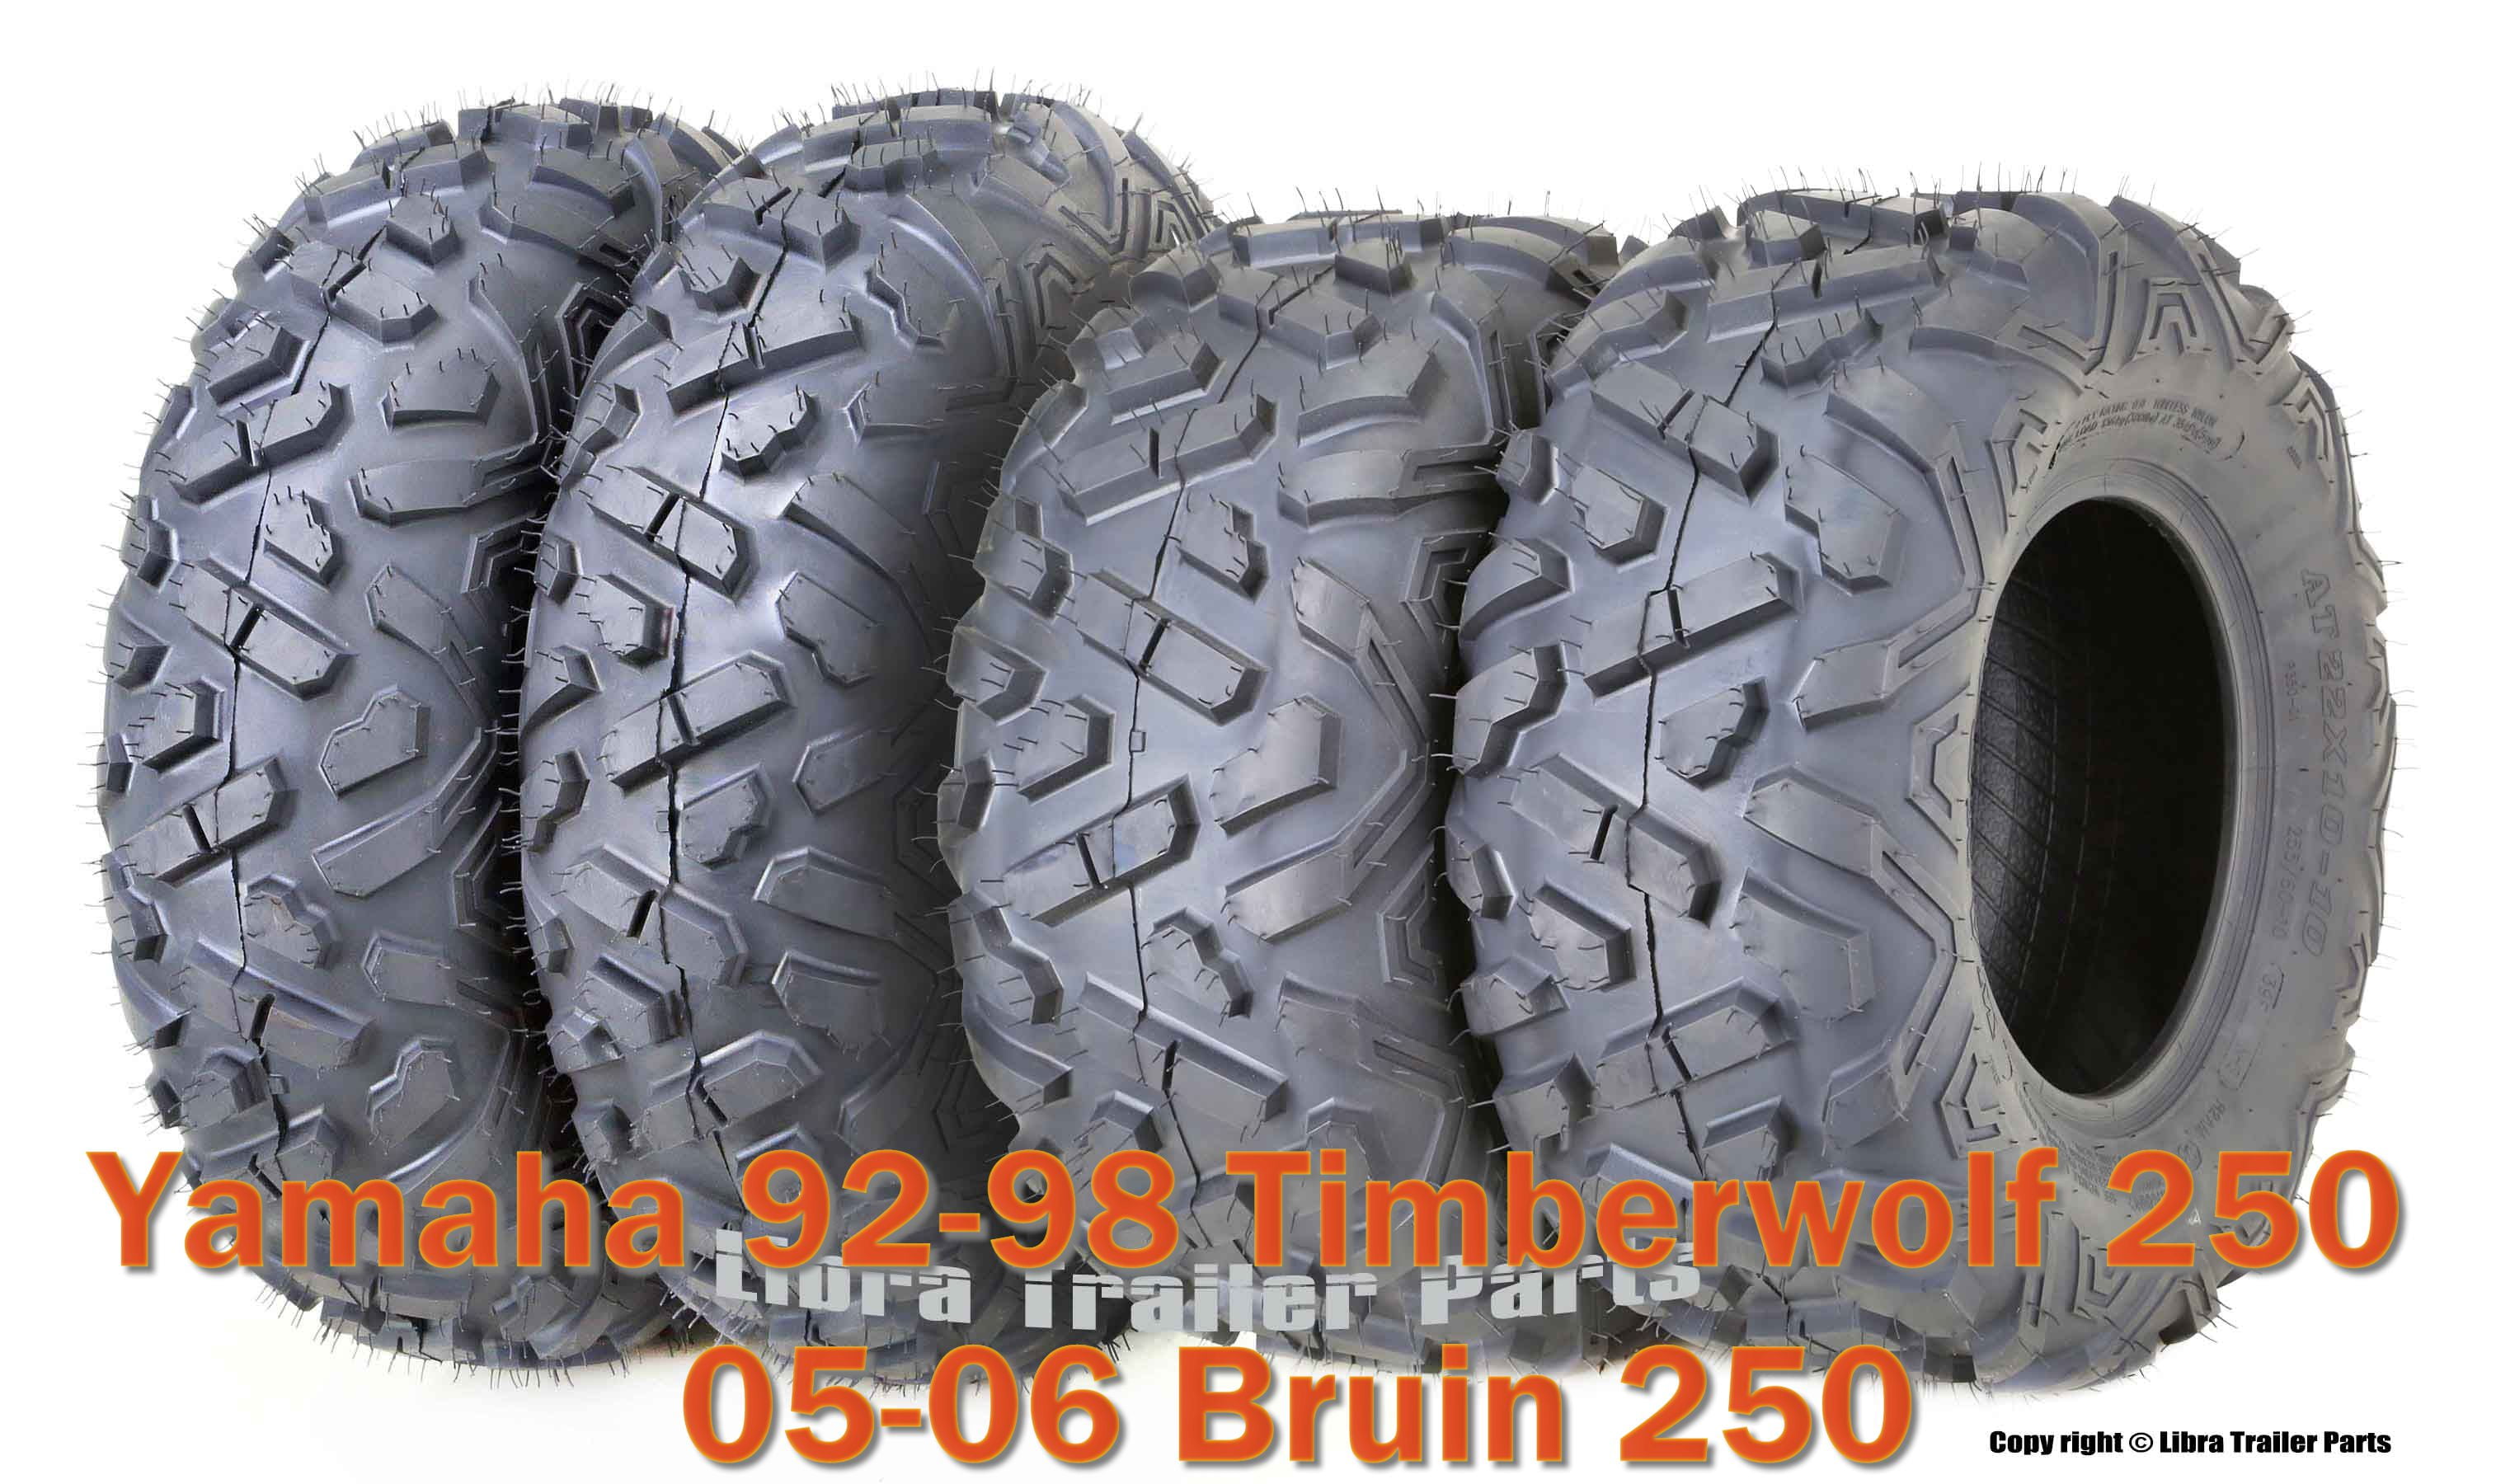 23x7-10 & 22x10-10 ATV Tire Set for Yamaha 92-98 Timberwolf 250 /05-06 Bruin 250 